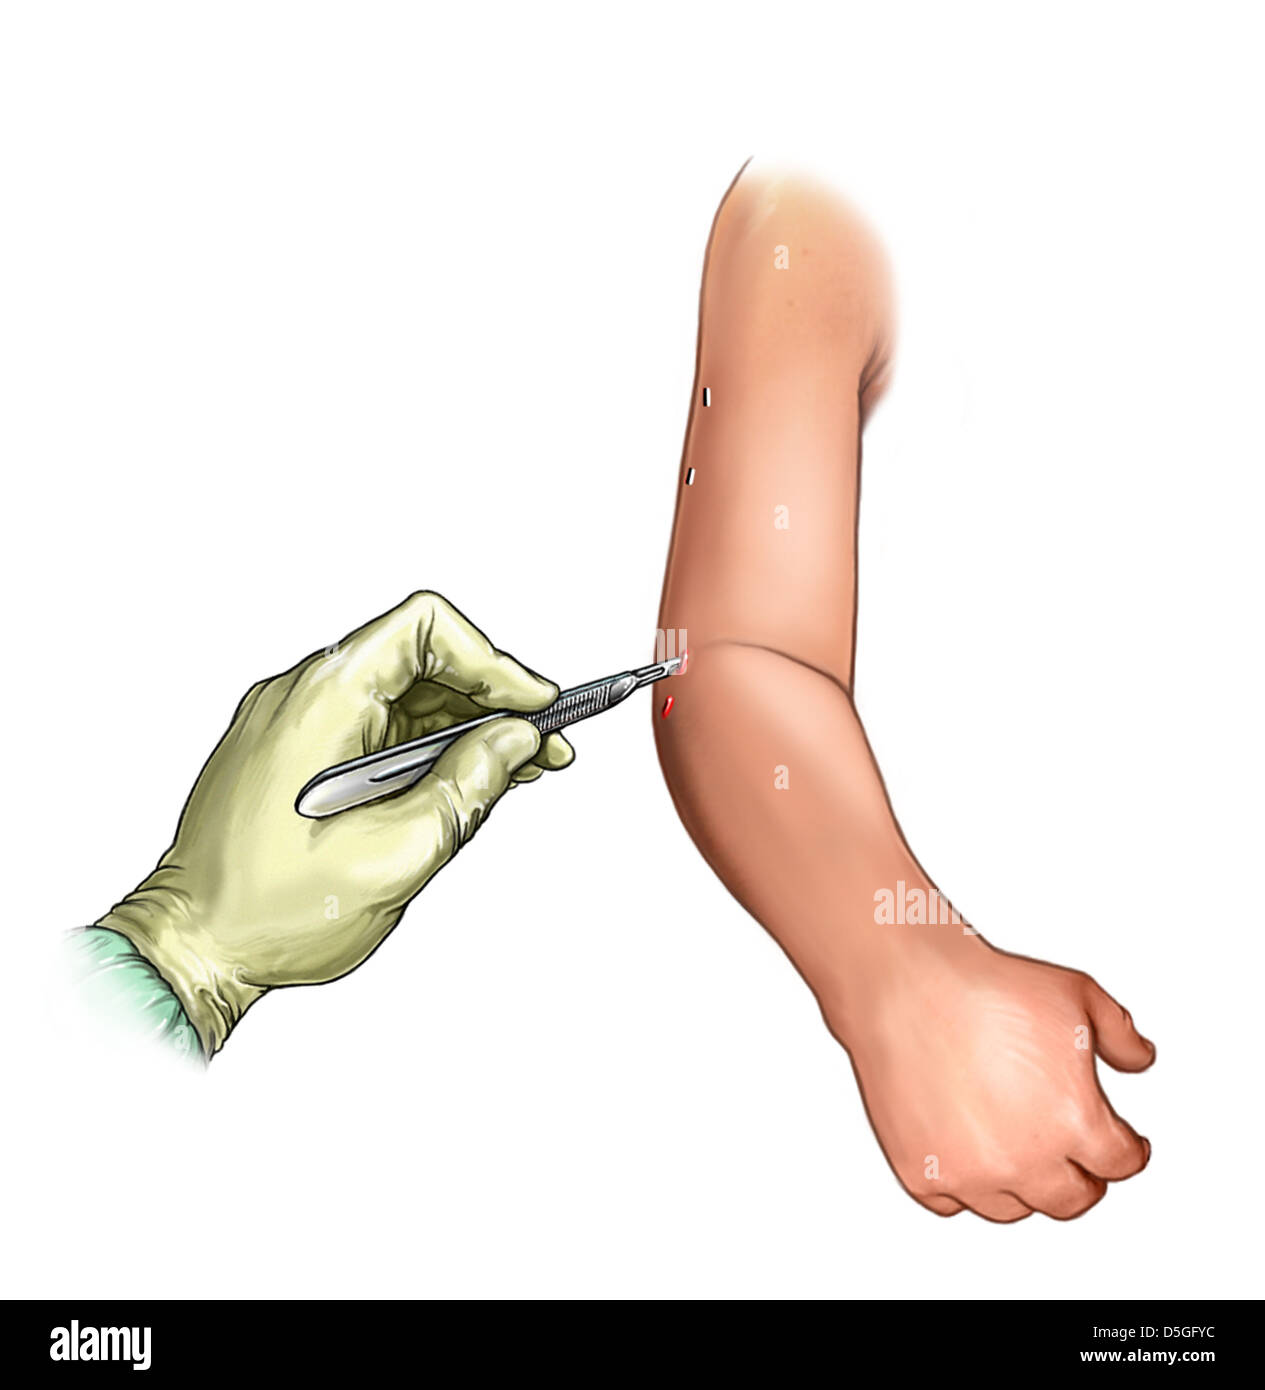 Arm-stab fixateur externe d'incisions Photo Stock - Alamy